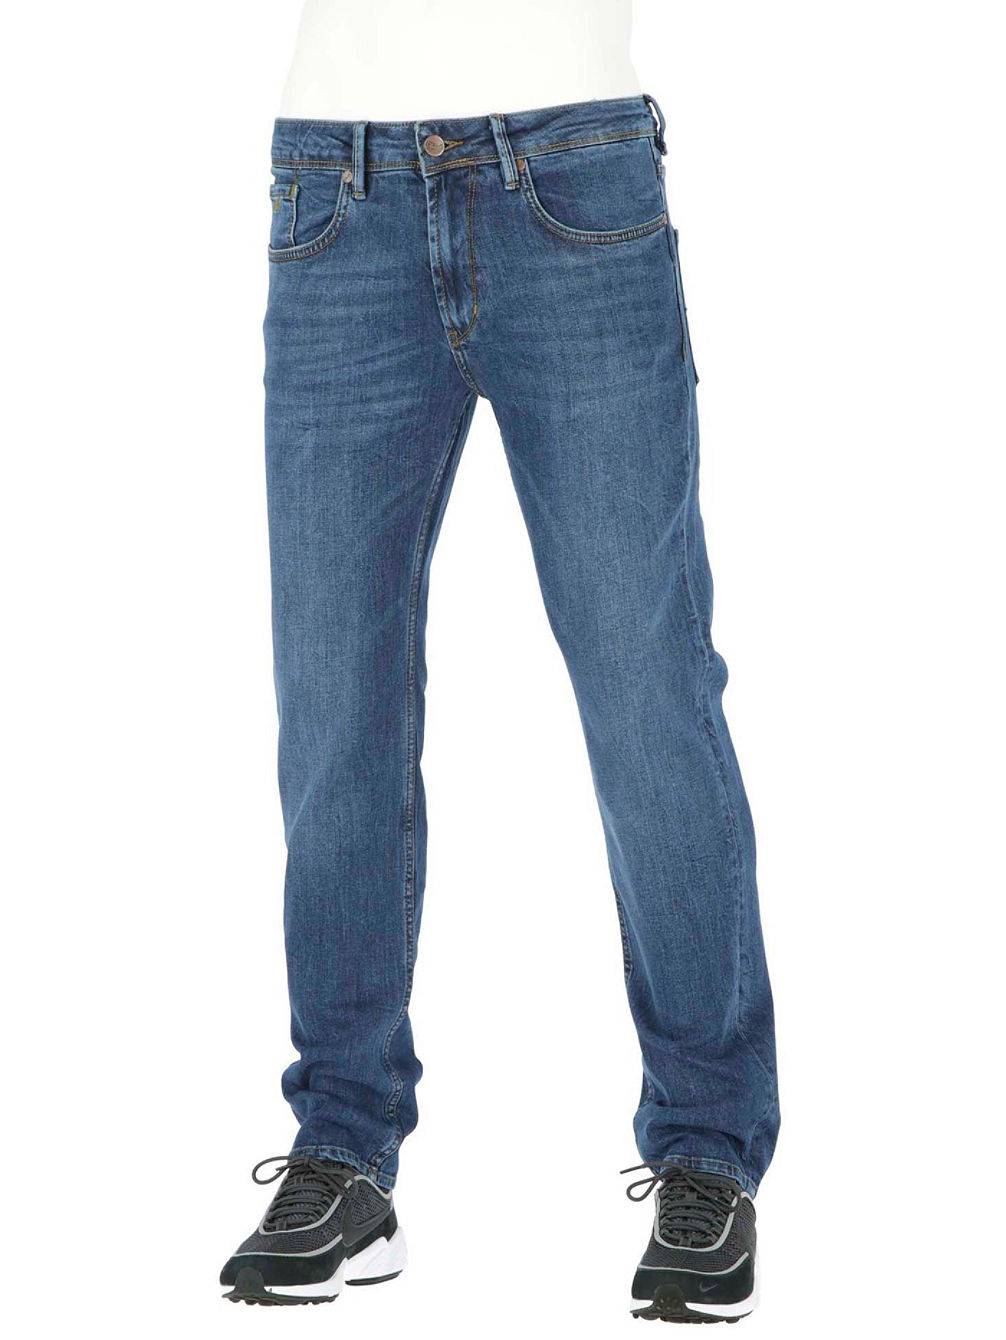 Trigger 2 Jeans